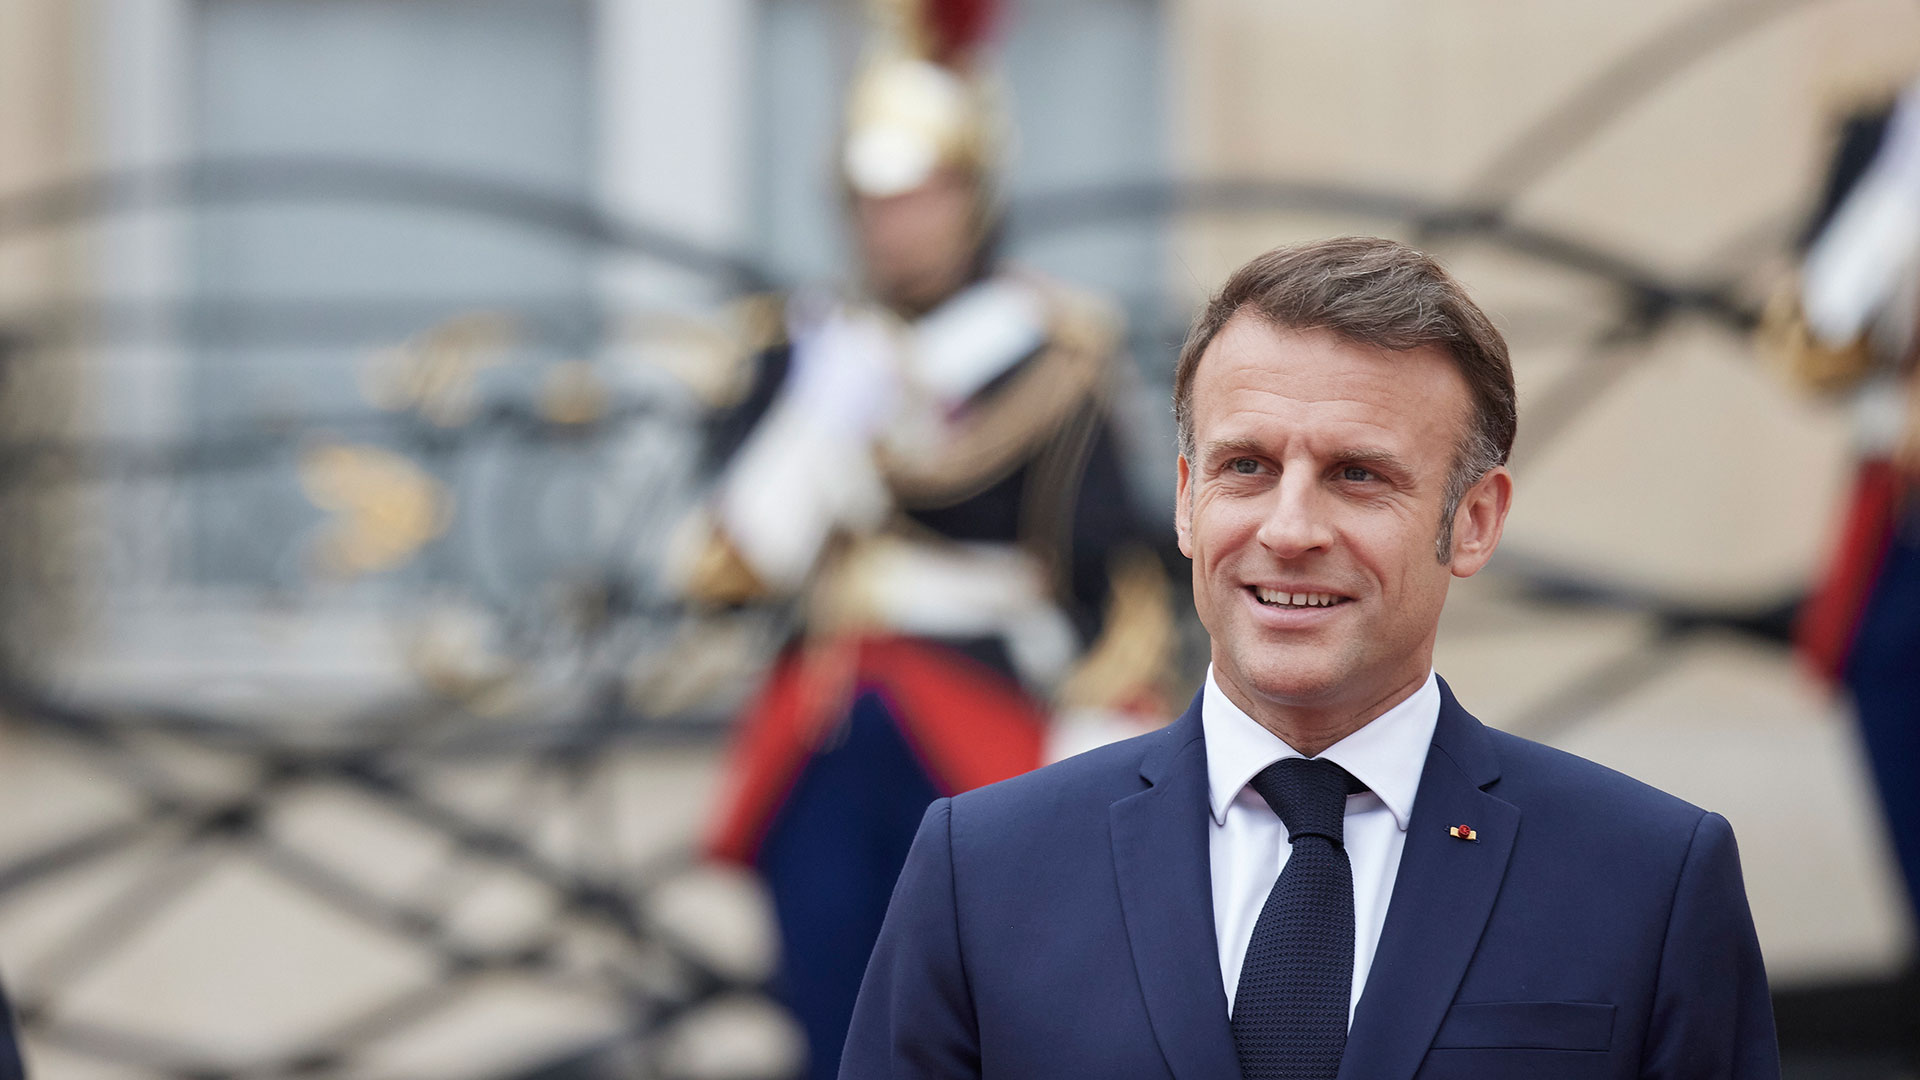 Γαλλία: Πολιτική ανάσα και ευκαιρία αναστοχασμού για τον Μακρόν